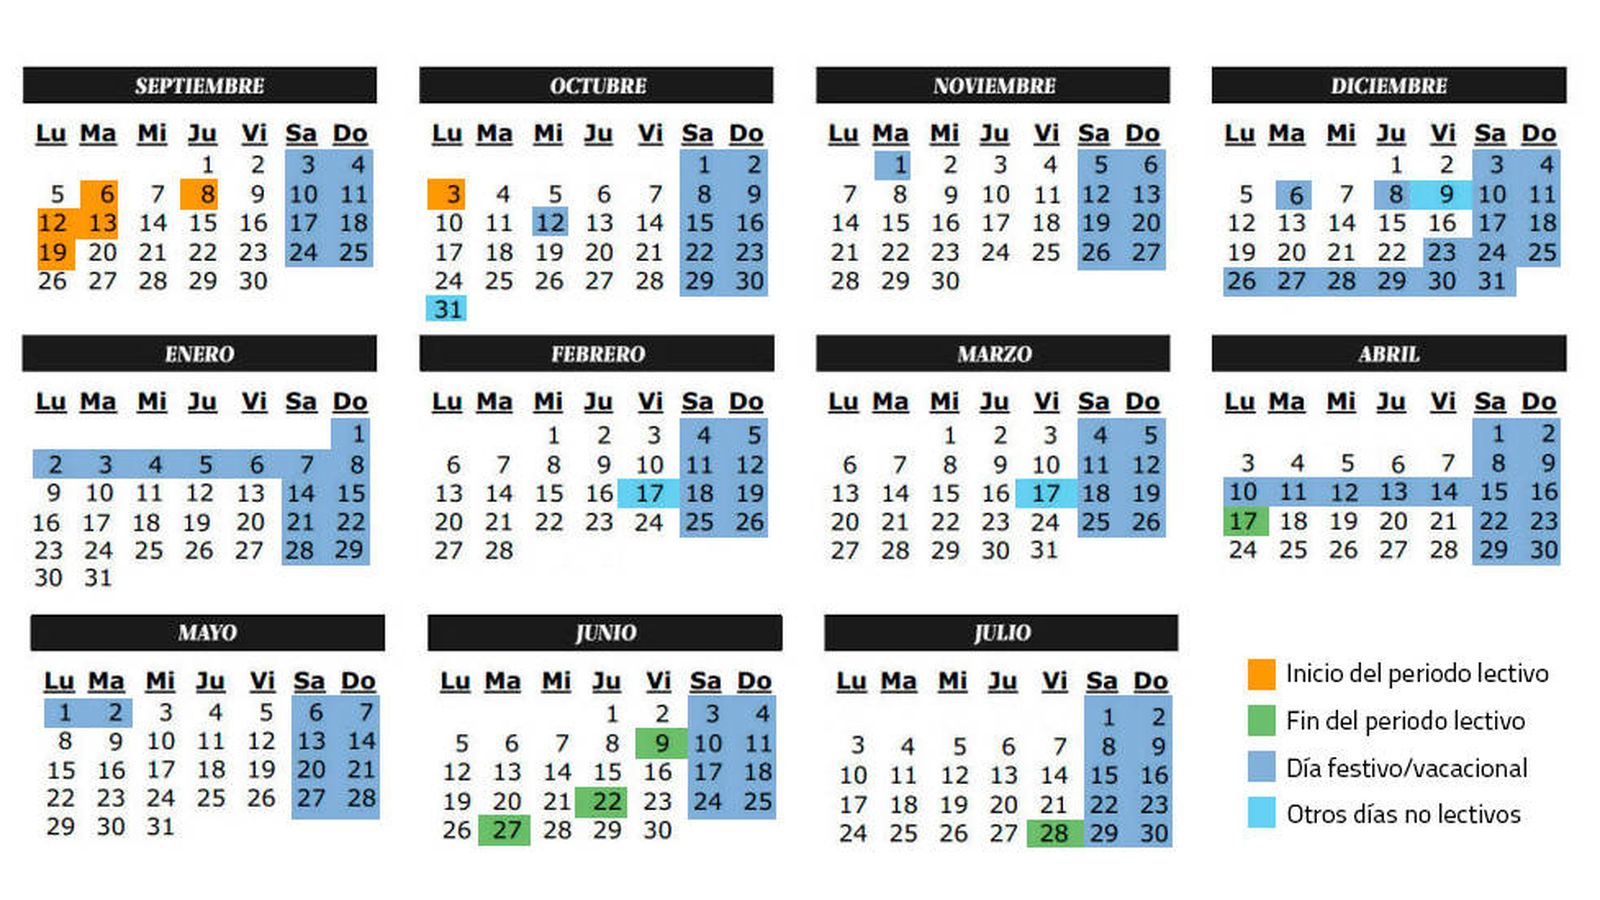 Foto: Calendario escolar del curso 2016-2017 en la Comunidad de Madrid (C.Castellón)